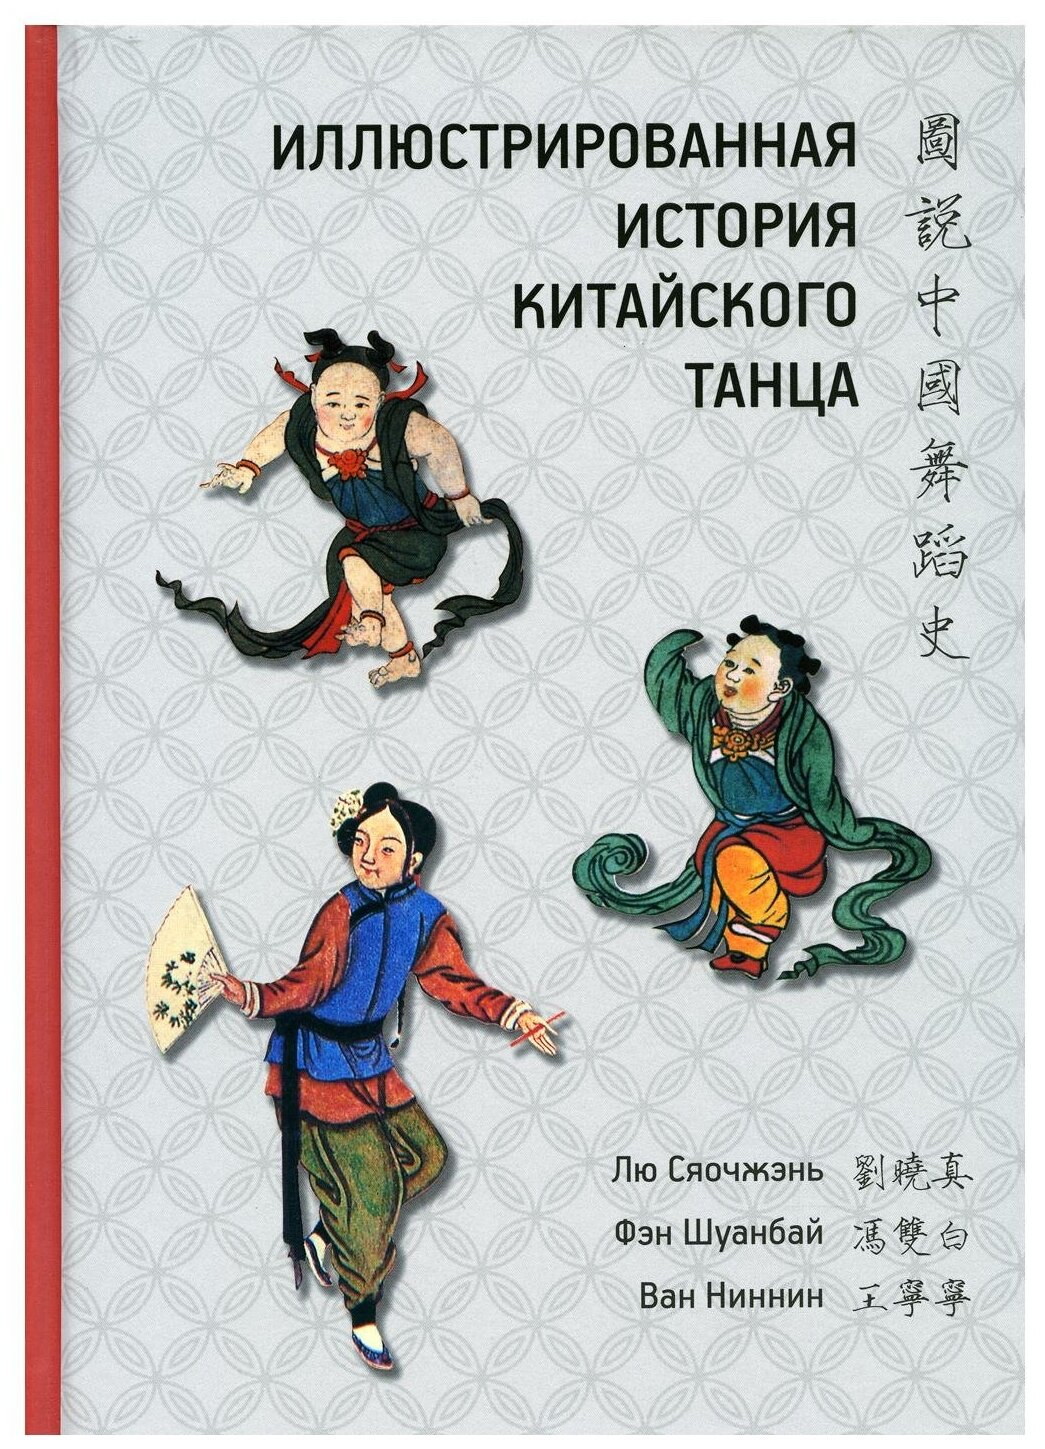 Иллюстрированная история китайского танца - фото №1